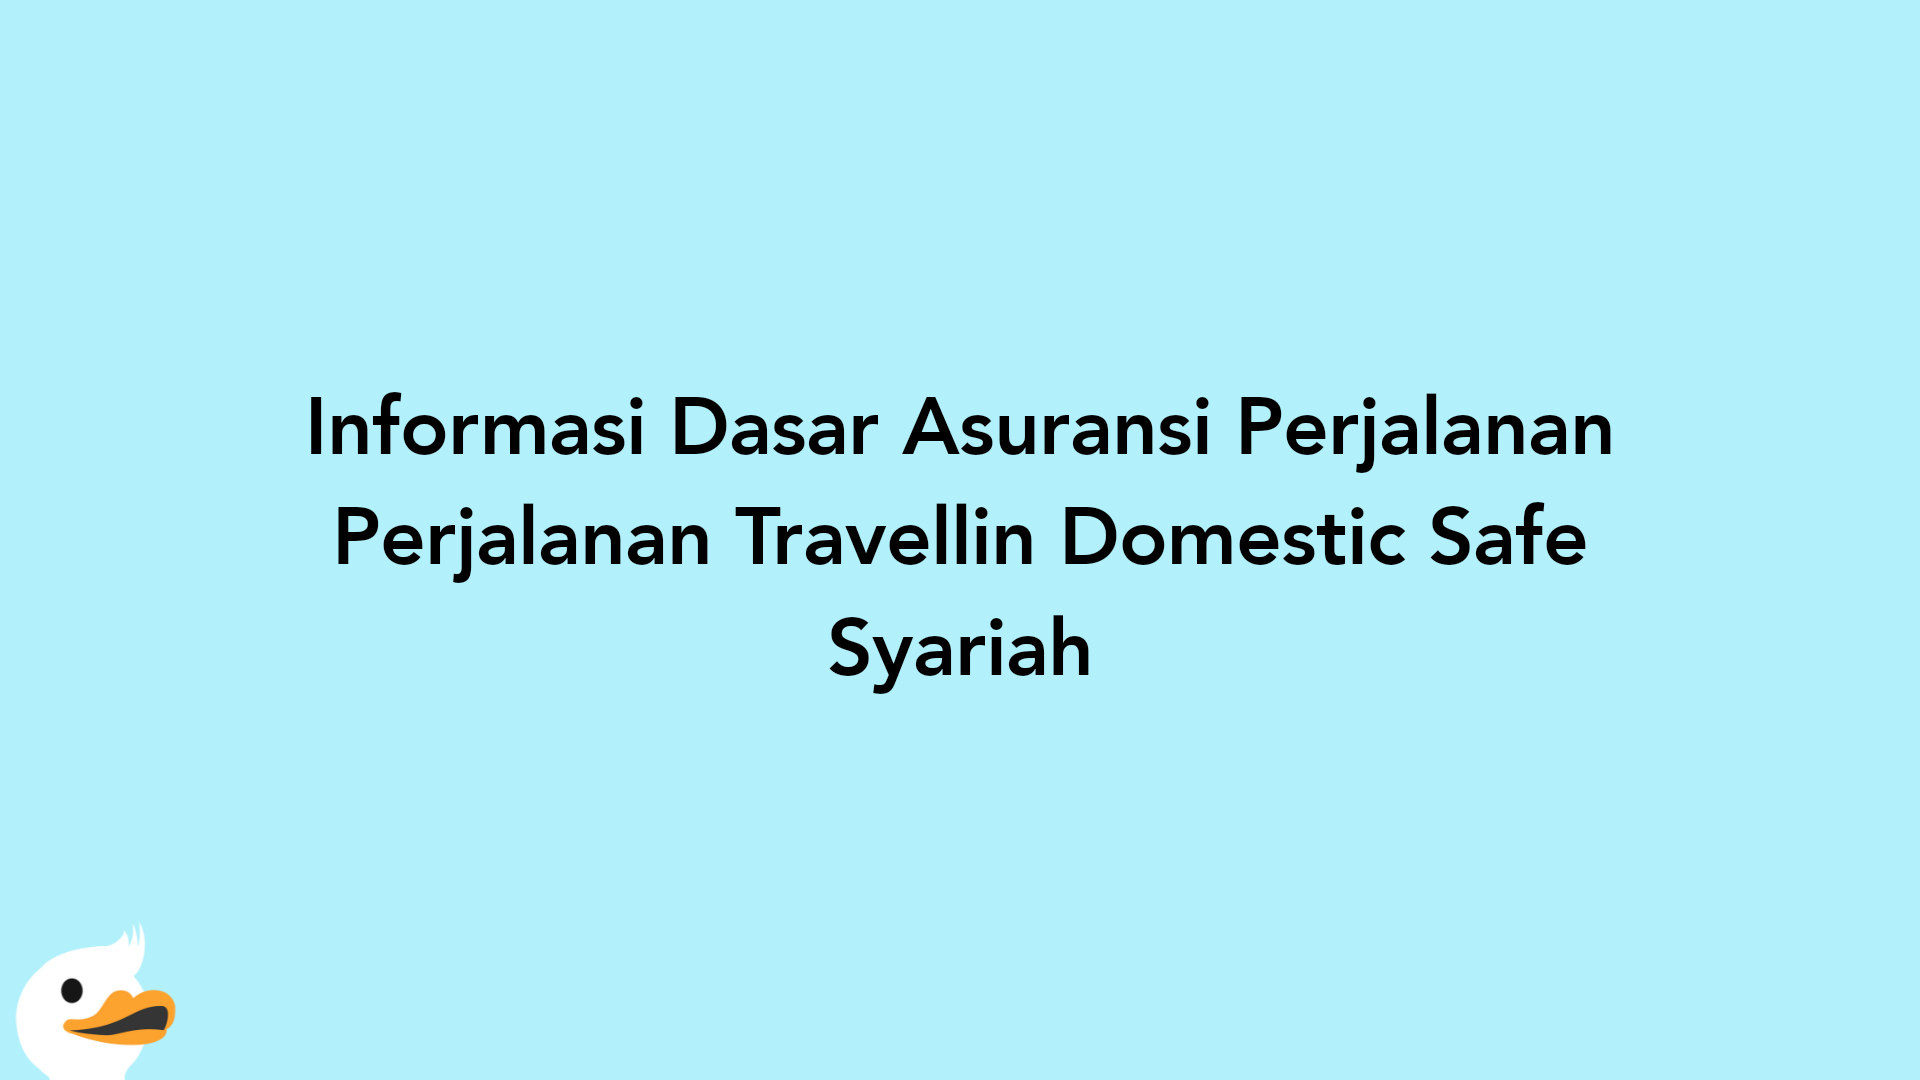 Informasi Dasar Asuransi Perjalanan Perjalanan Travellin Domestic Safe Syariah